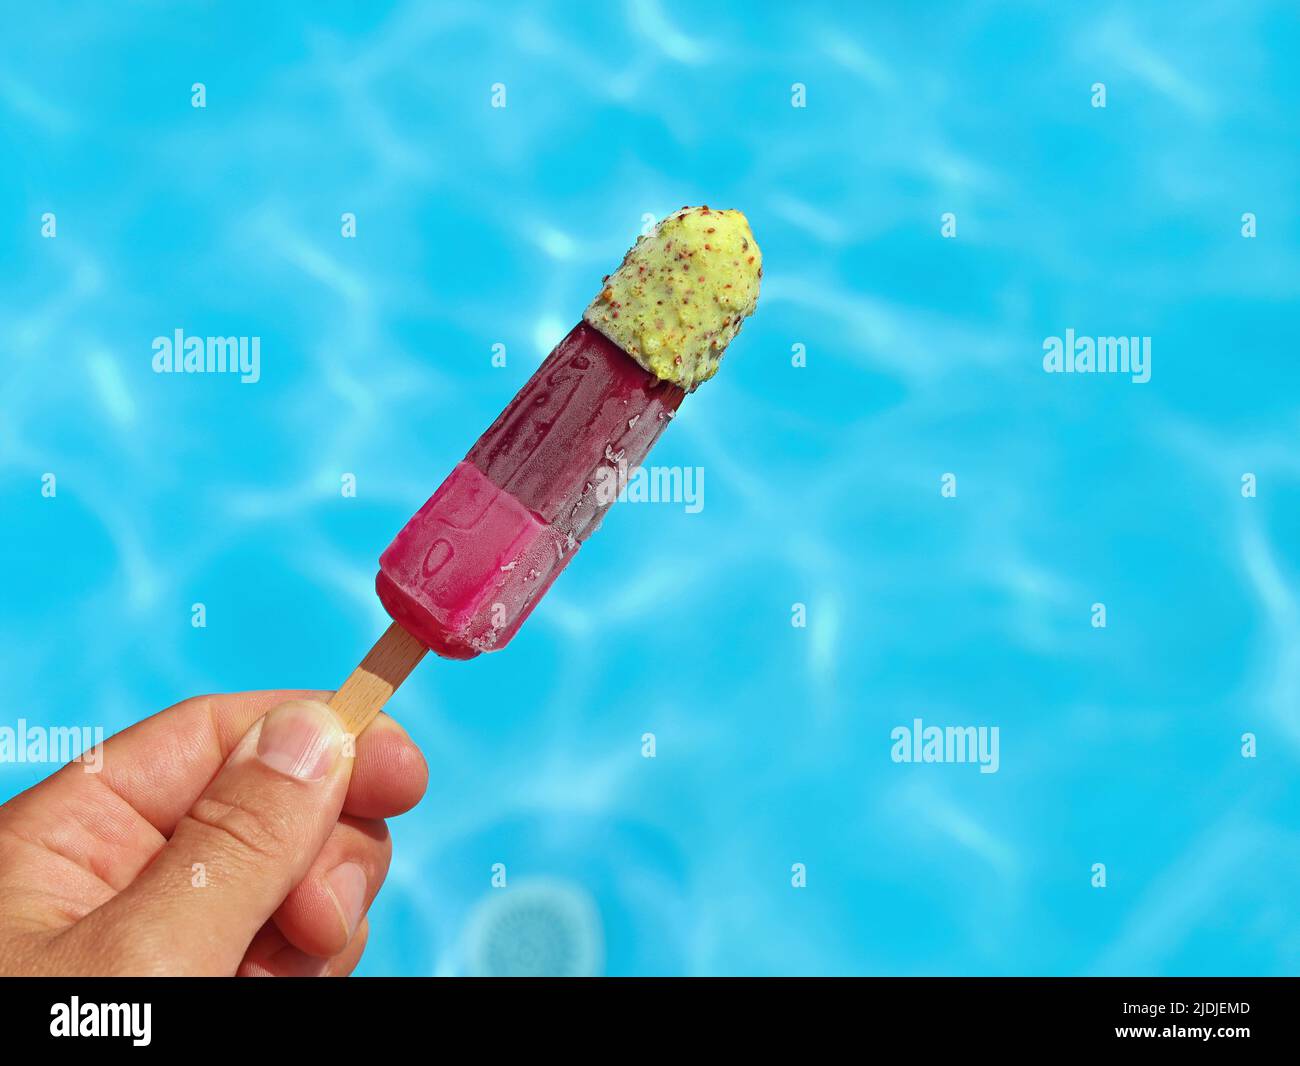 Die Hand hält fruchtige bunte Eiszapfen oder Wassereis vor einer blauen Pooloberfläche, helfen gegen Sommerhitze Konzeptbild Stockfoto